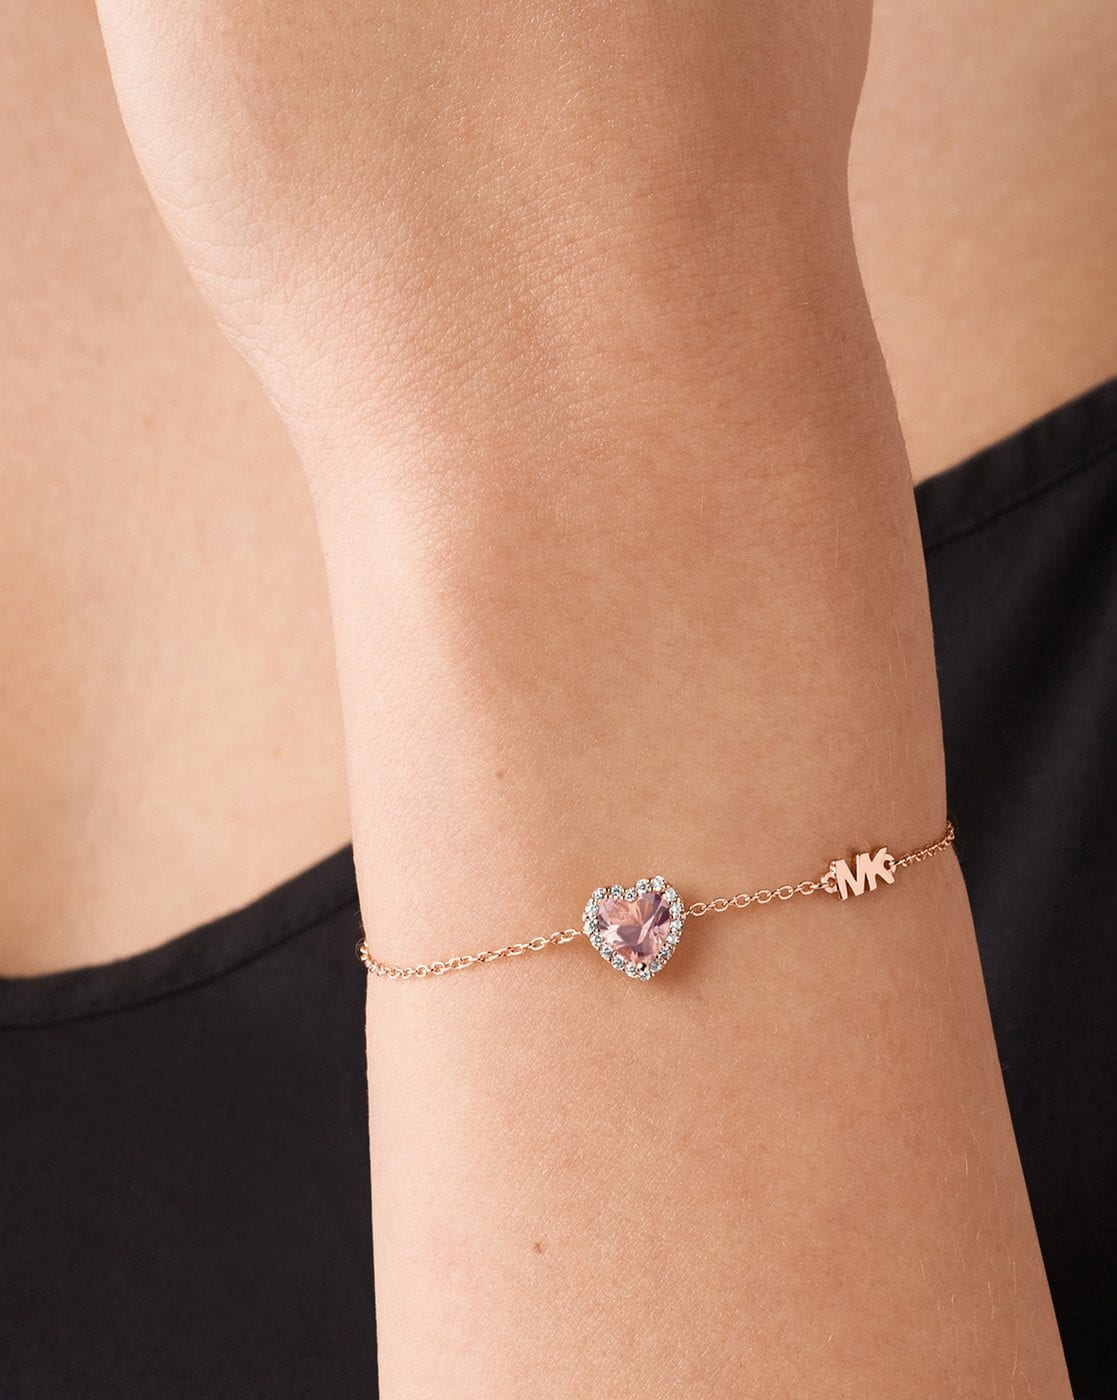 Michael Kors Rose Gold Heart Charm Bracelet for Women Online India at